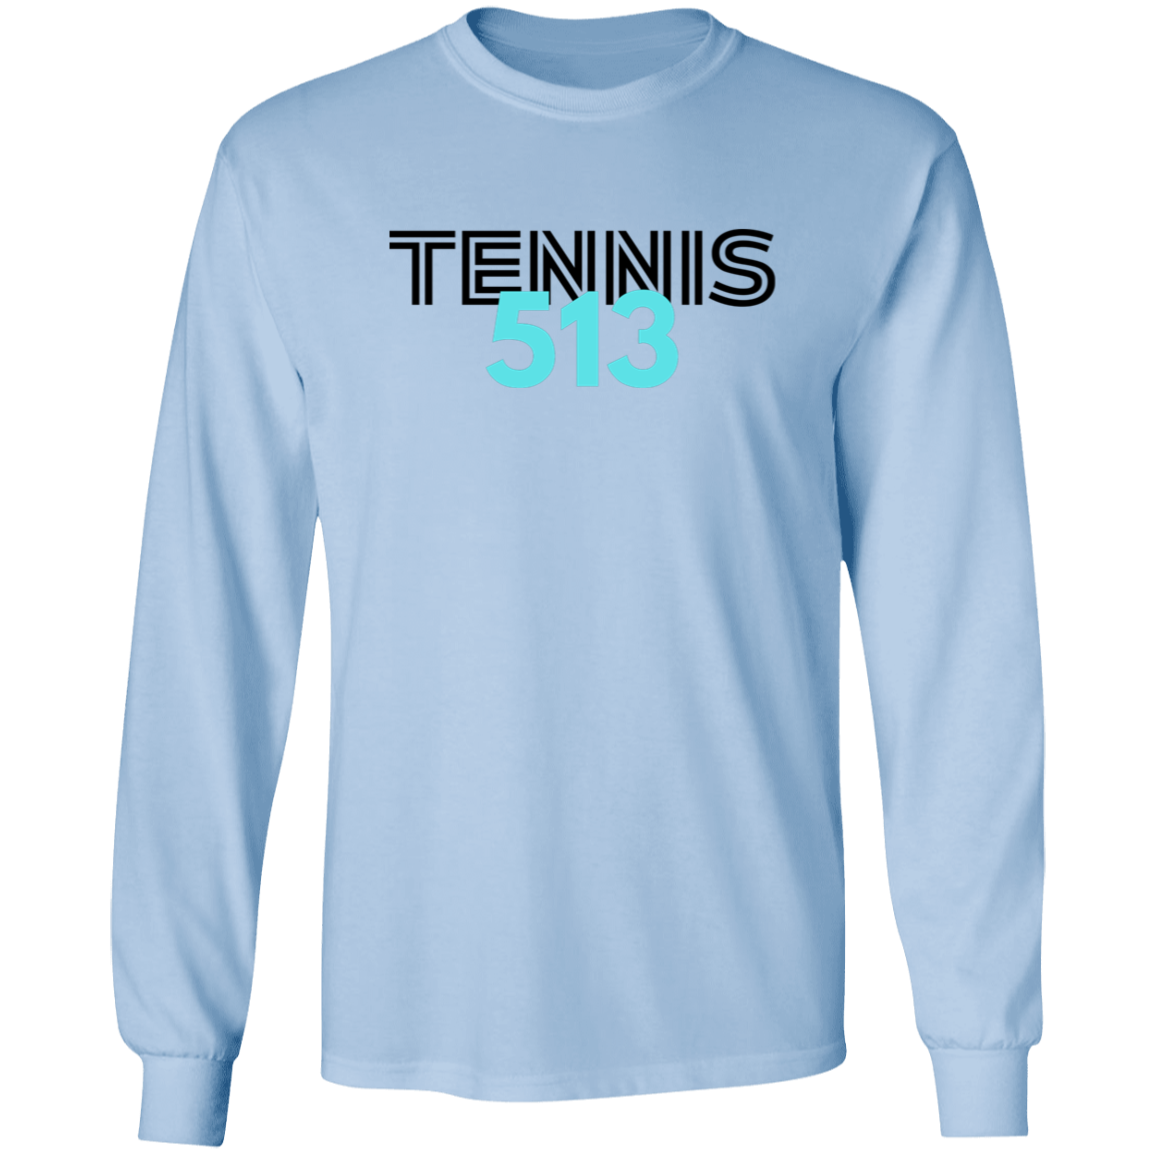 Tennis513  Ultra Cotton Unisex Tee